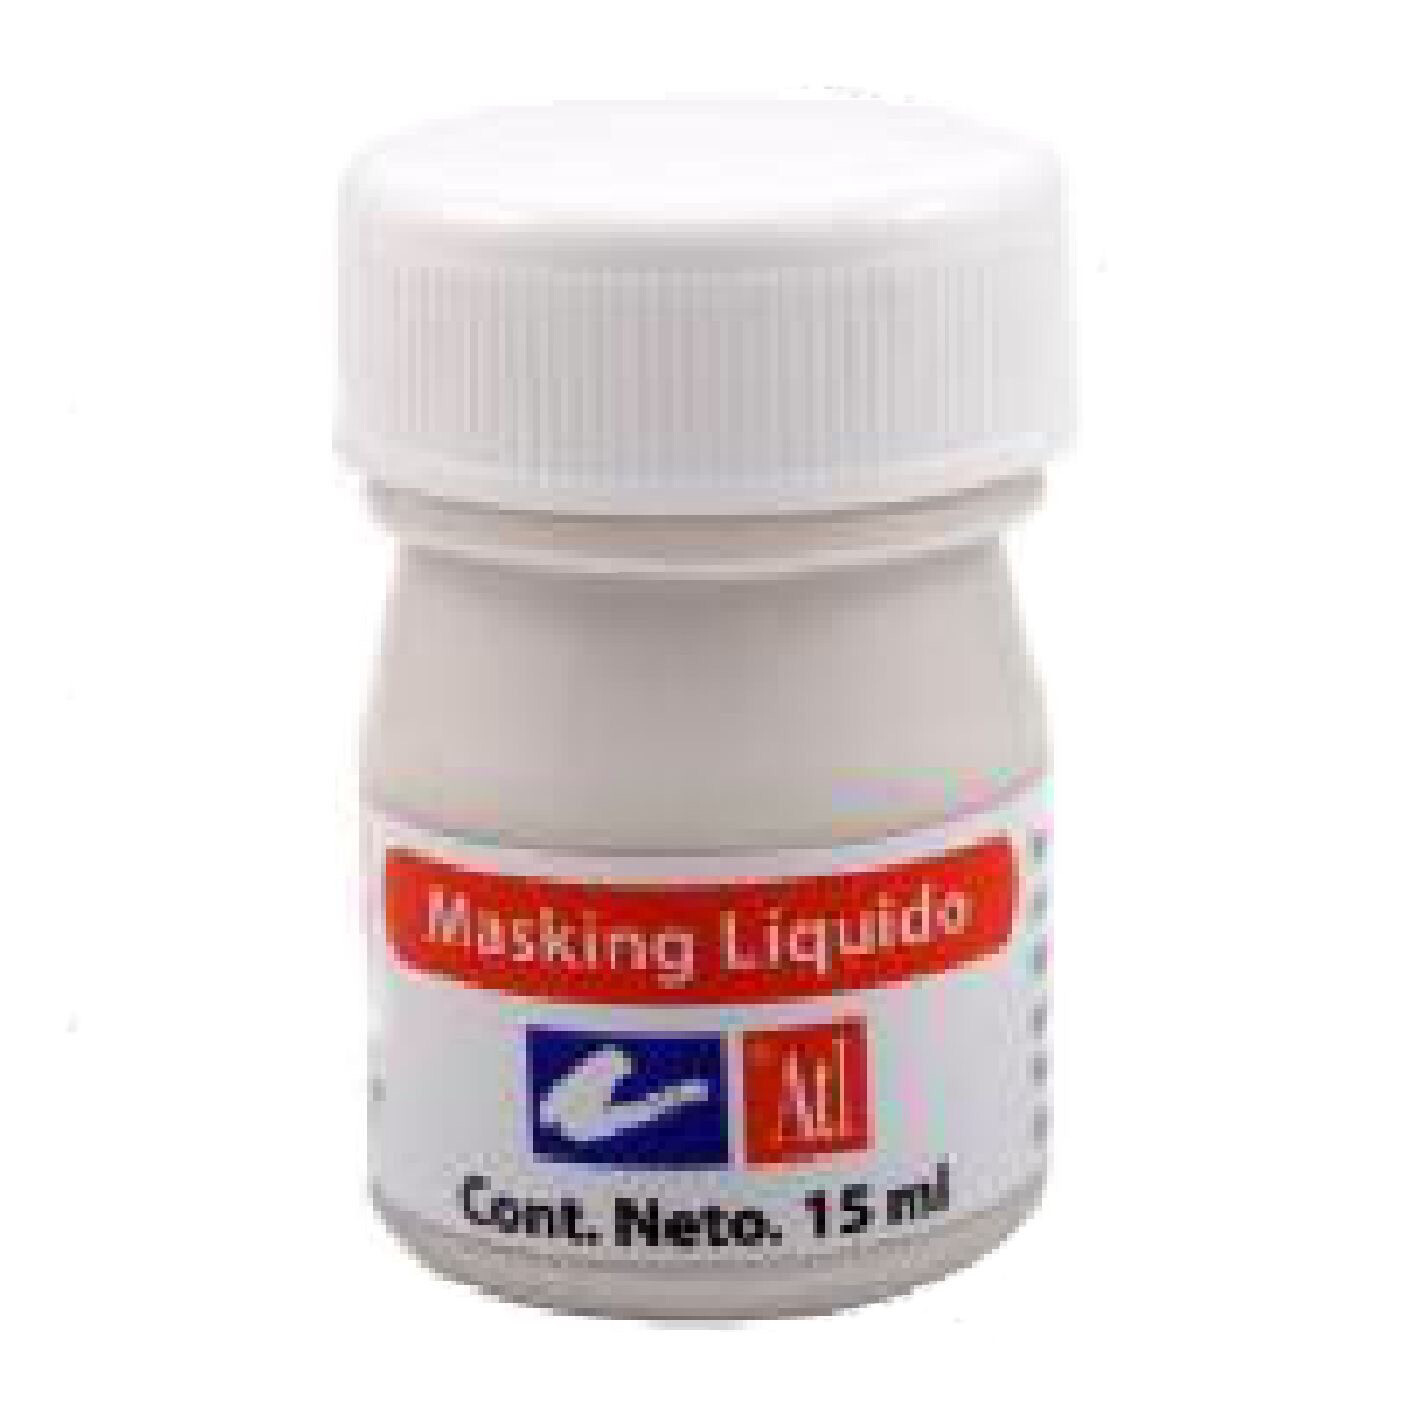 Masking Liquido 15 ml.